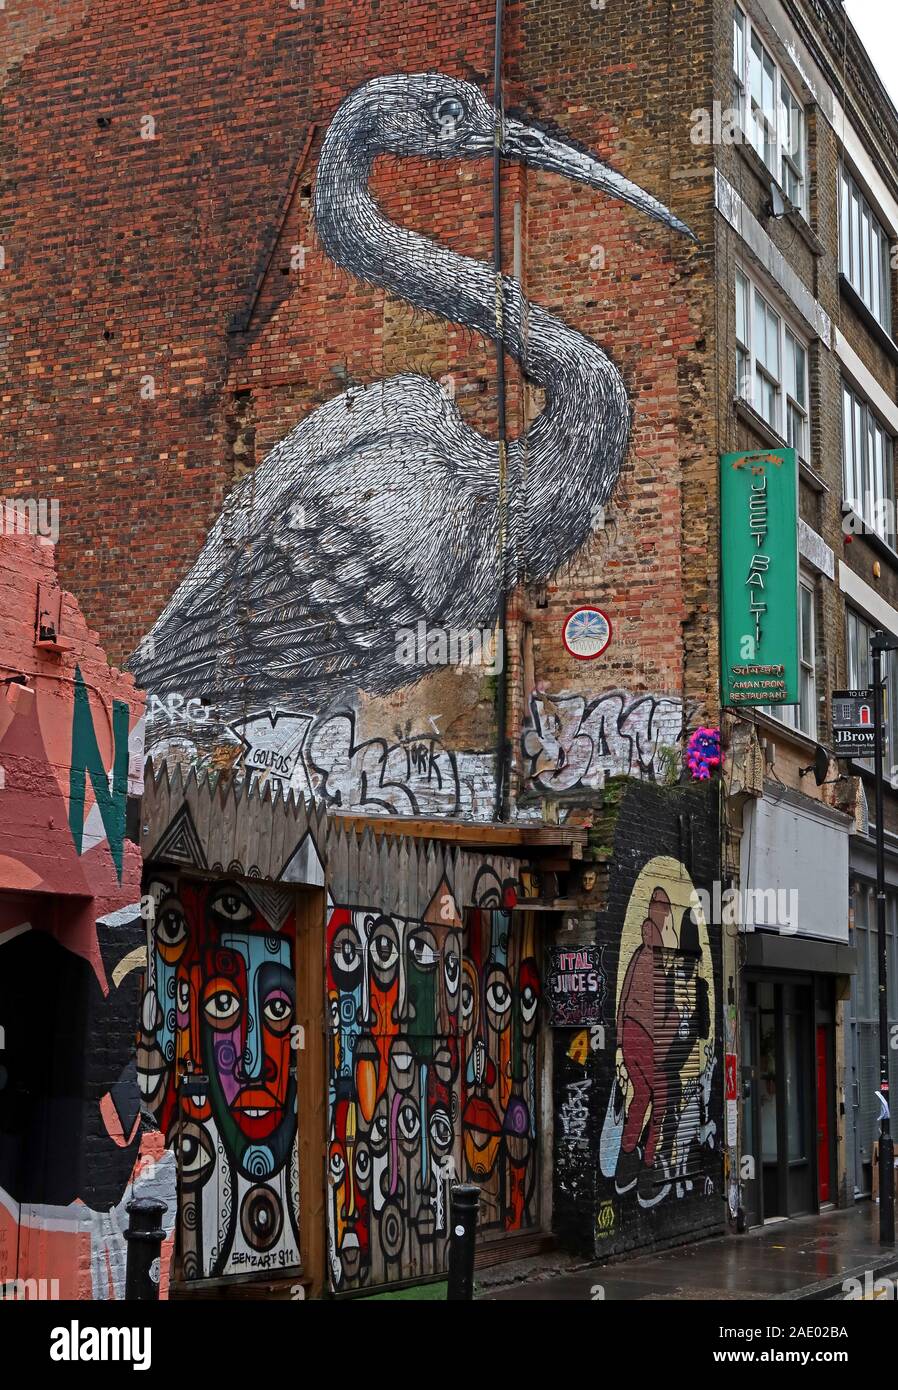 Cicogna a muro, Brick Lane, arte e graffiti, Shoreditch, Tower Hamlets, East End, Londra, Sud-est, Inghilterra, Regno Unito, E1 6QL Foto Stock